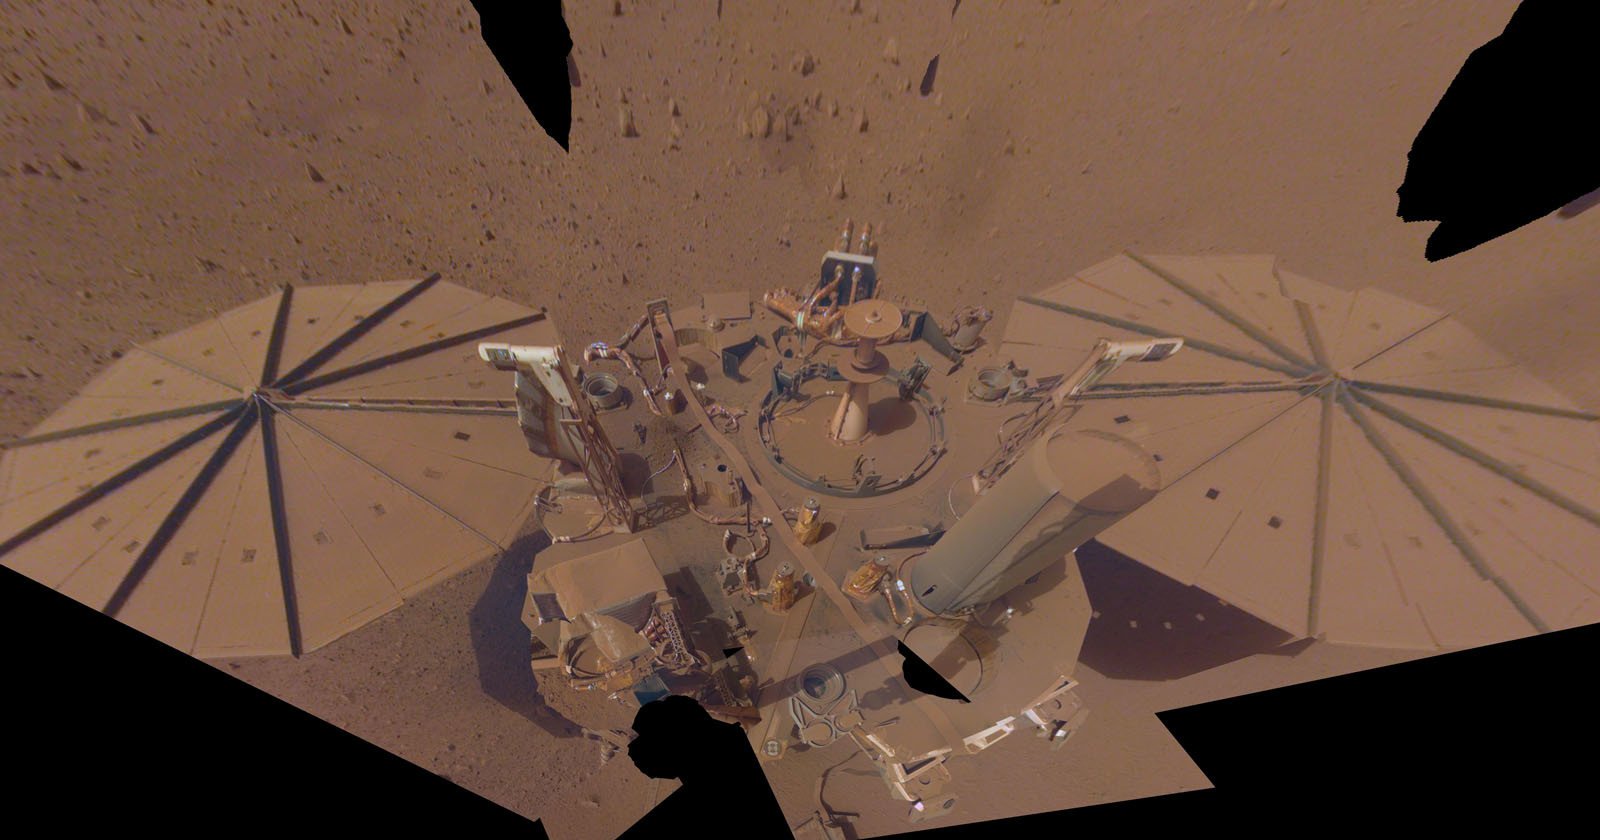  mars insight lander final selfie shows huge amounts 